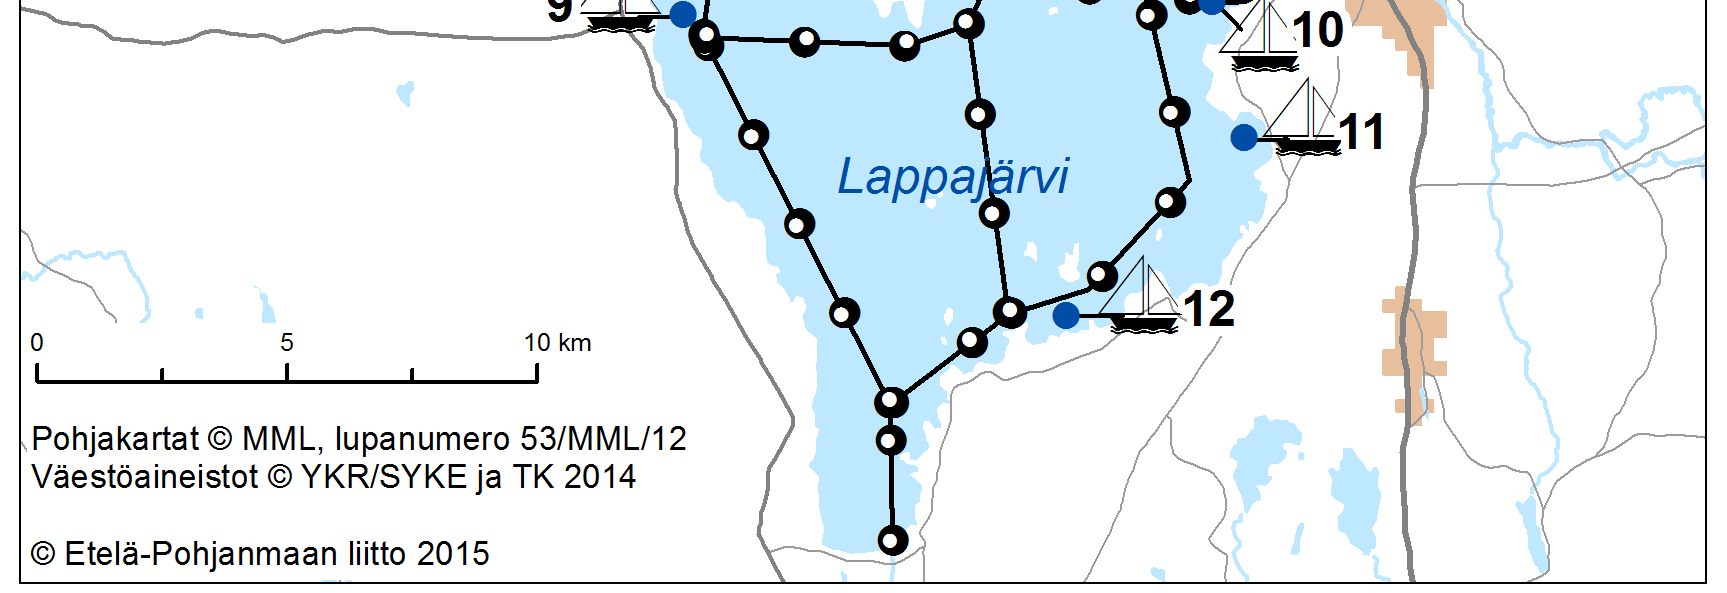 2.2 Evijärven ja Lappajärven satamat Kuva 1. Evijärven ja Lappajärven venesatamat.